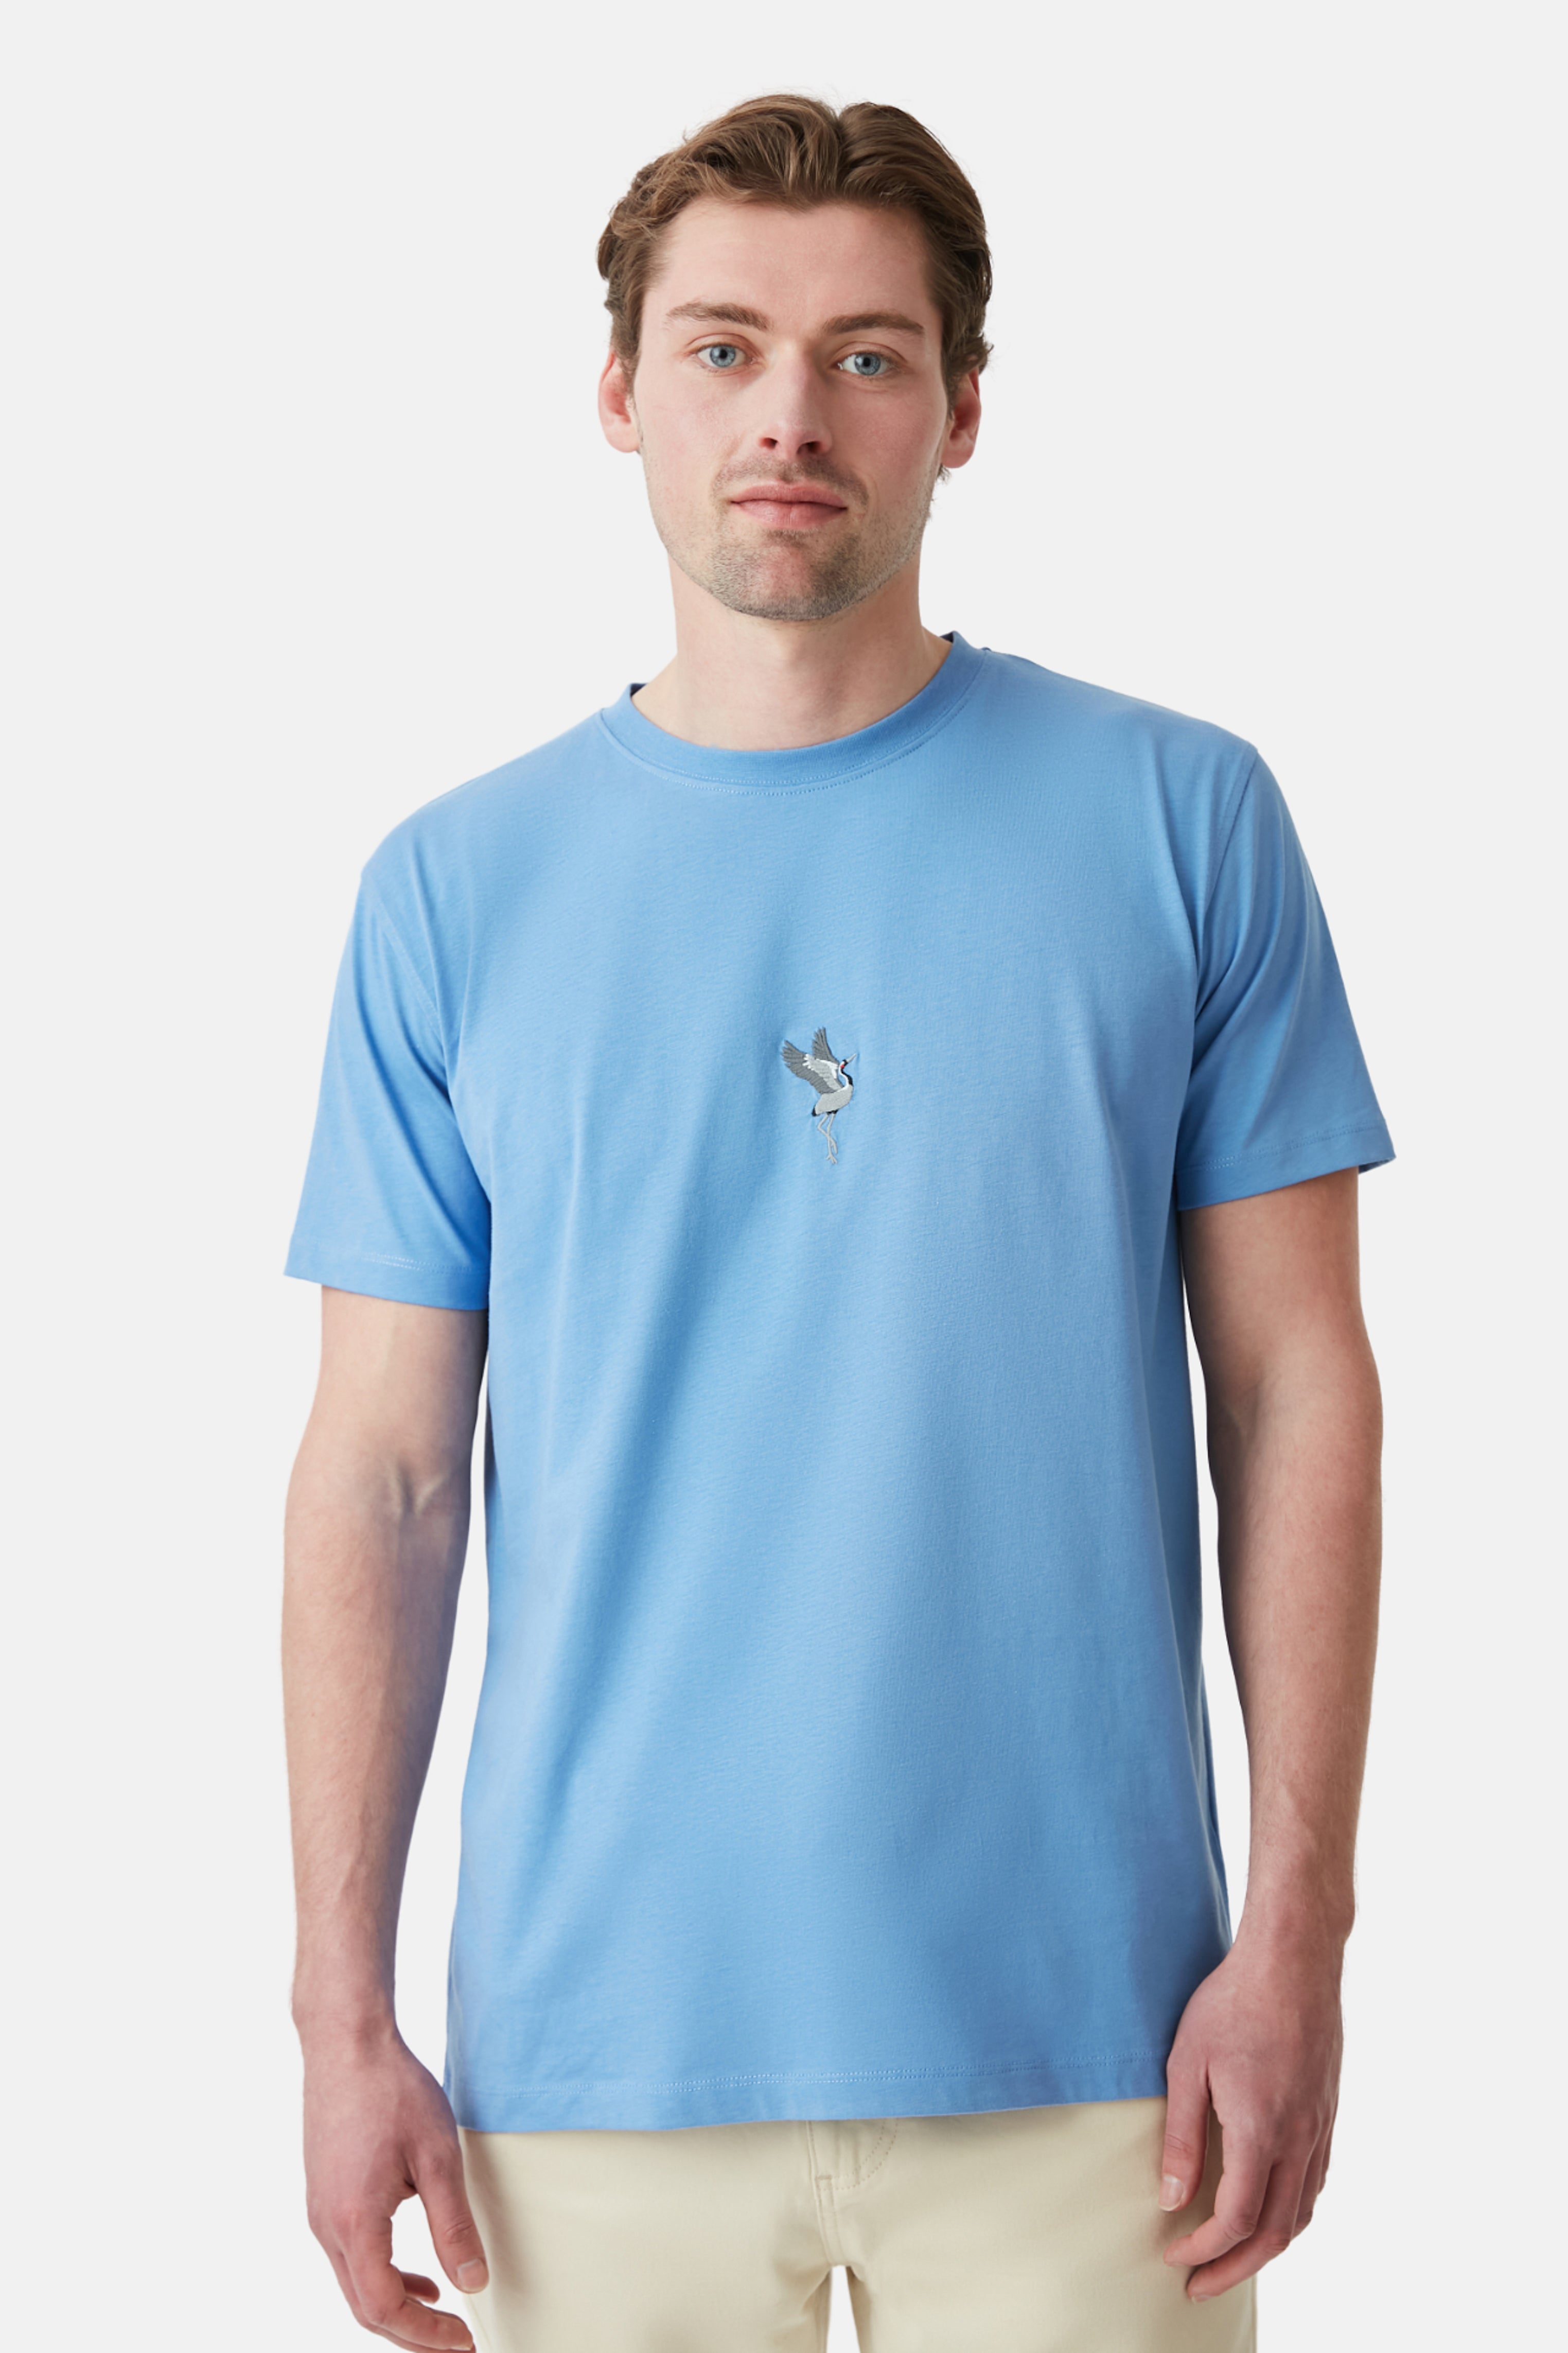 Nachhaltiges T-Shirt mit Vogel-Motiv in Navy | WWF